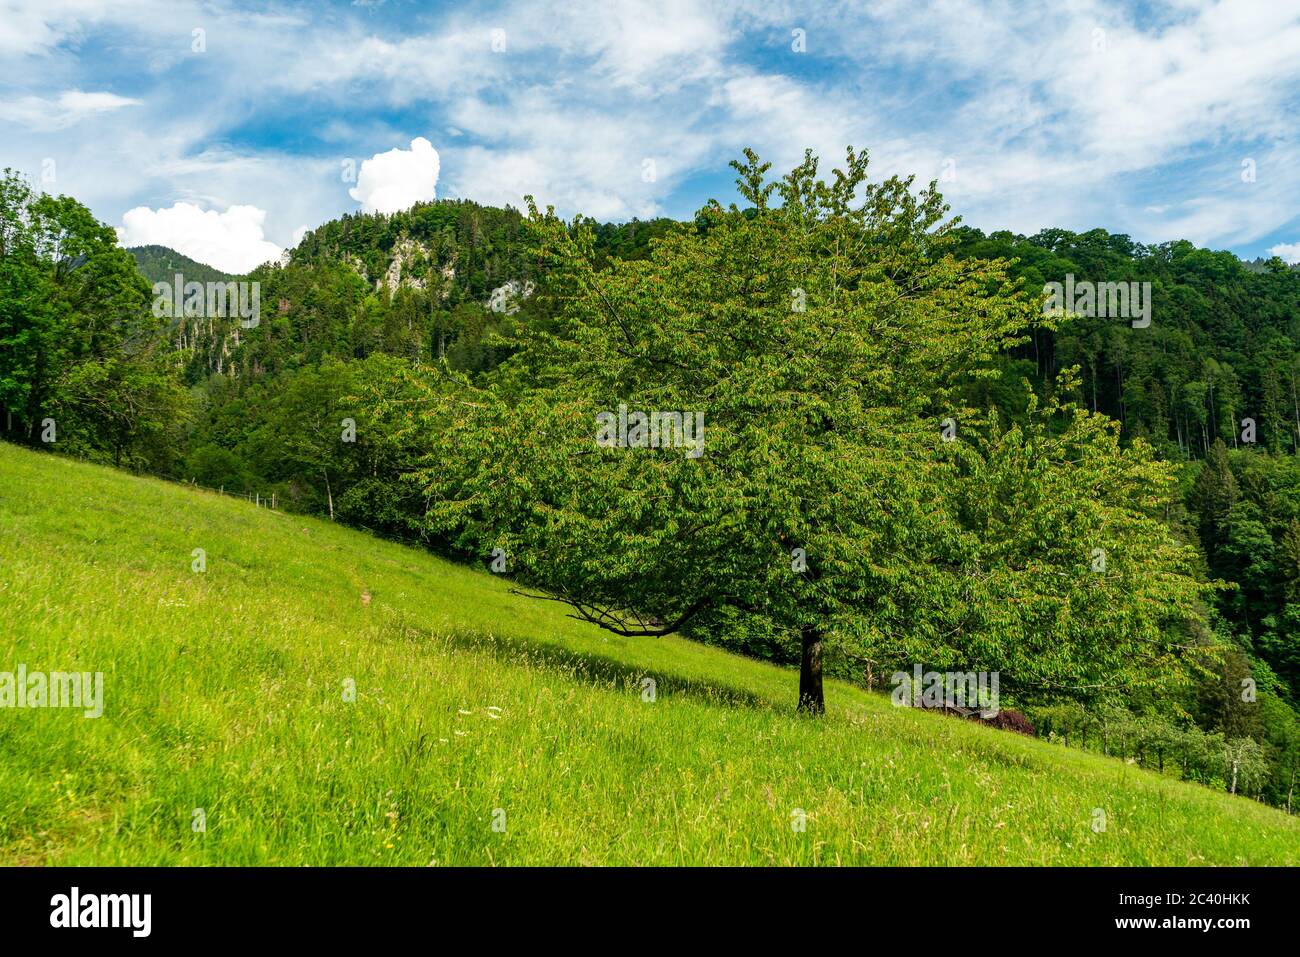 Kirschbaum in Orsanka, Klaus, Vorarlberg, Austria, ein schöner grosser Baum steht allein auf der Wiese, am Berghang, Bergen und Wald im Hintergrund Stock Photo